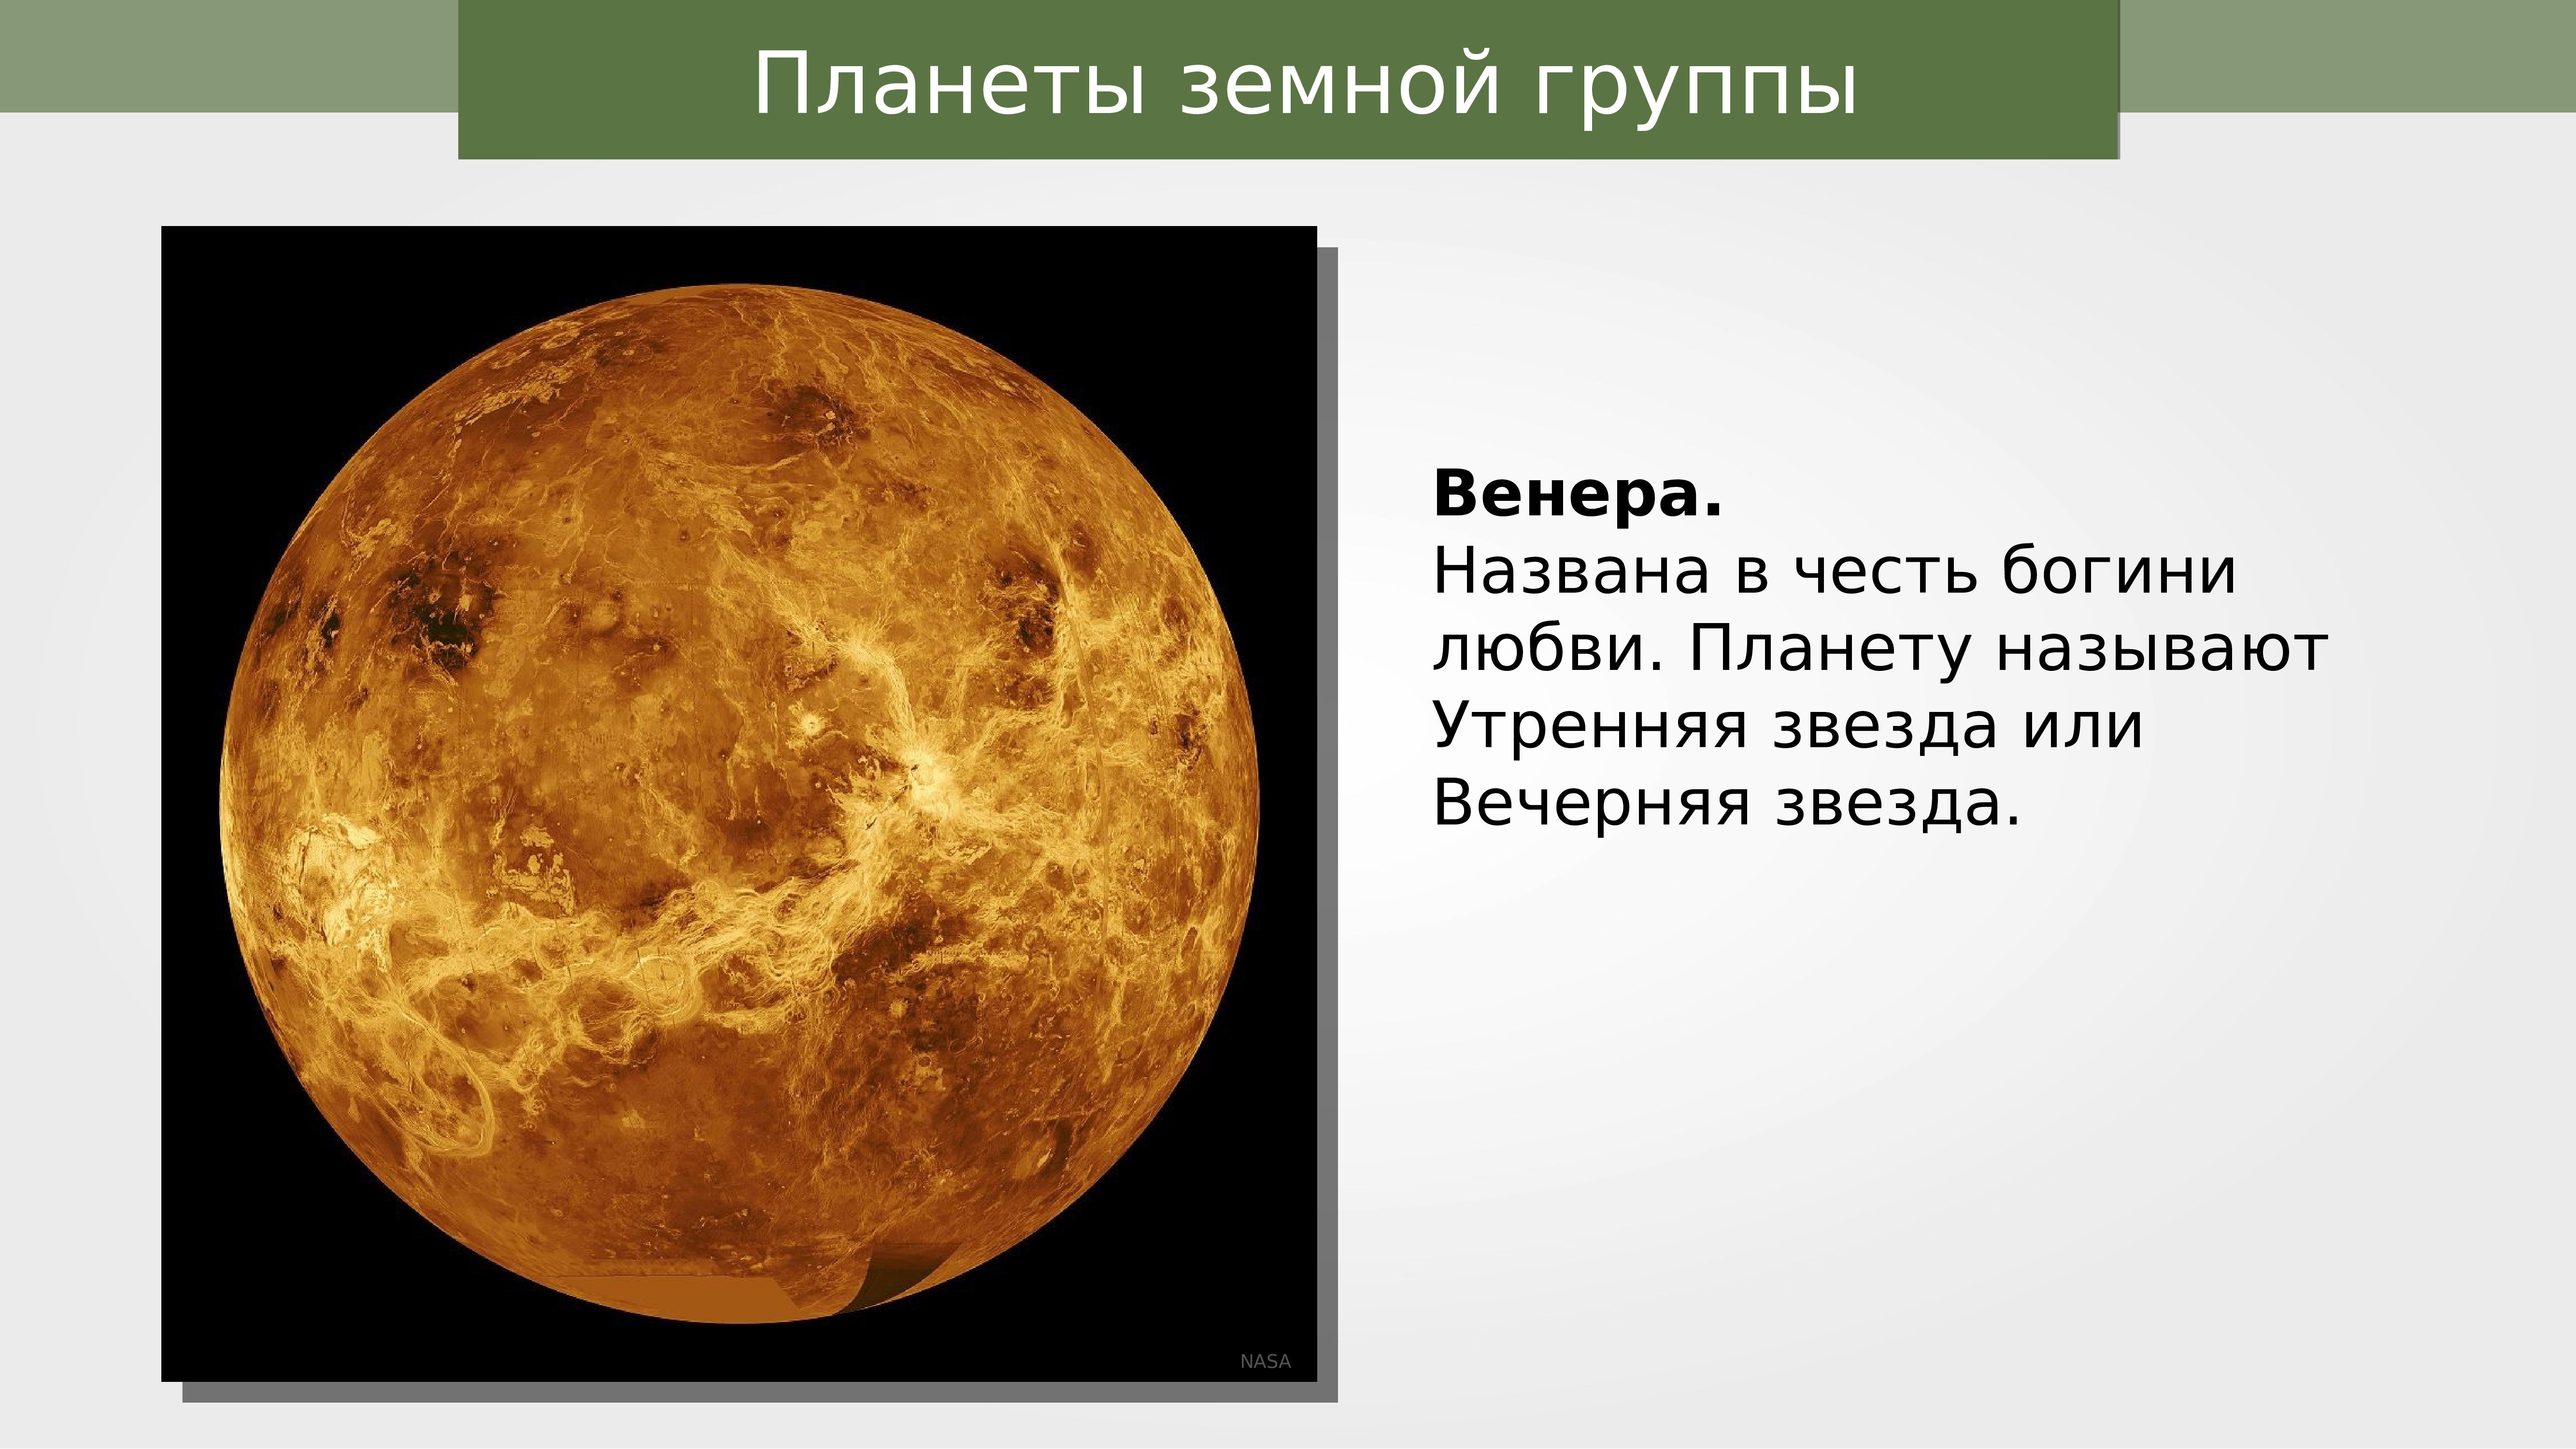 Название планет из античной мифологии. Интересные факты о Венере.